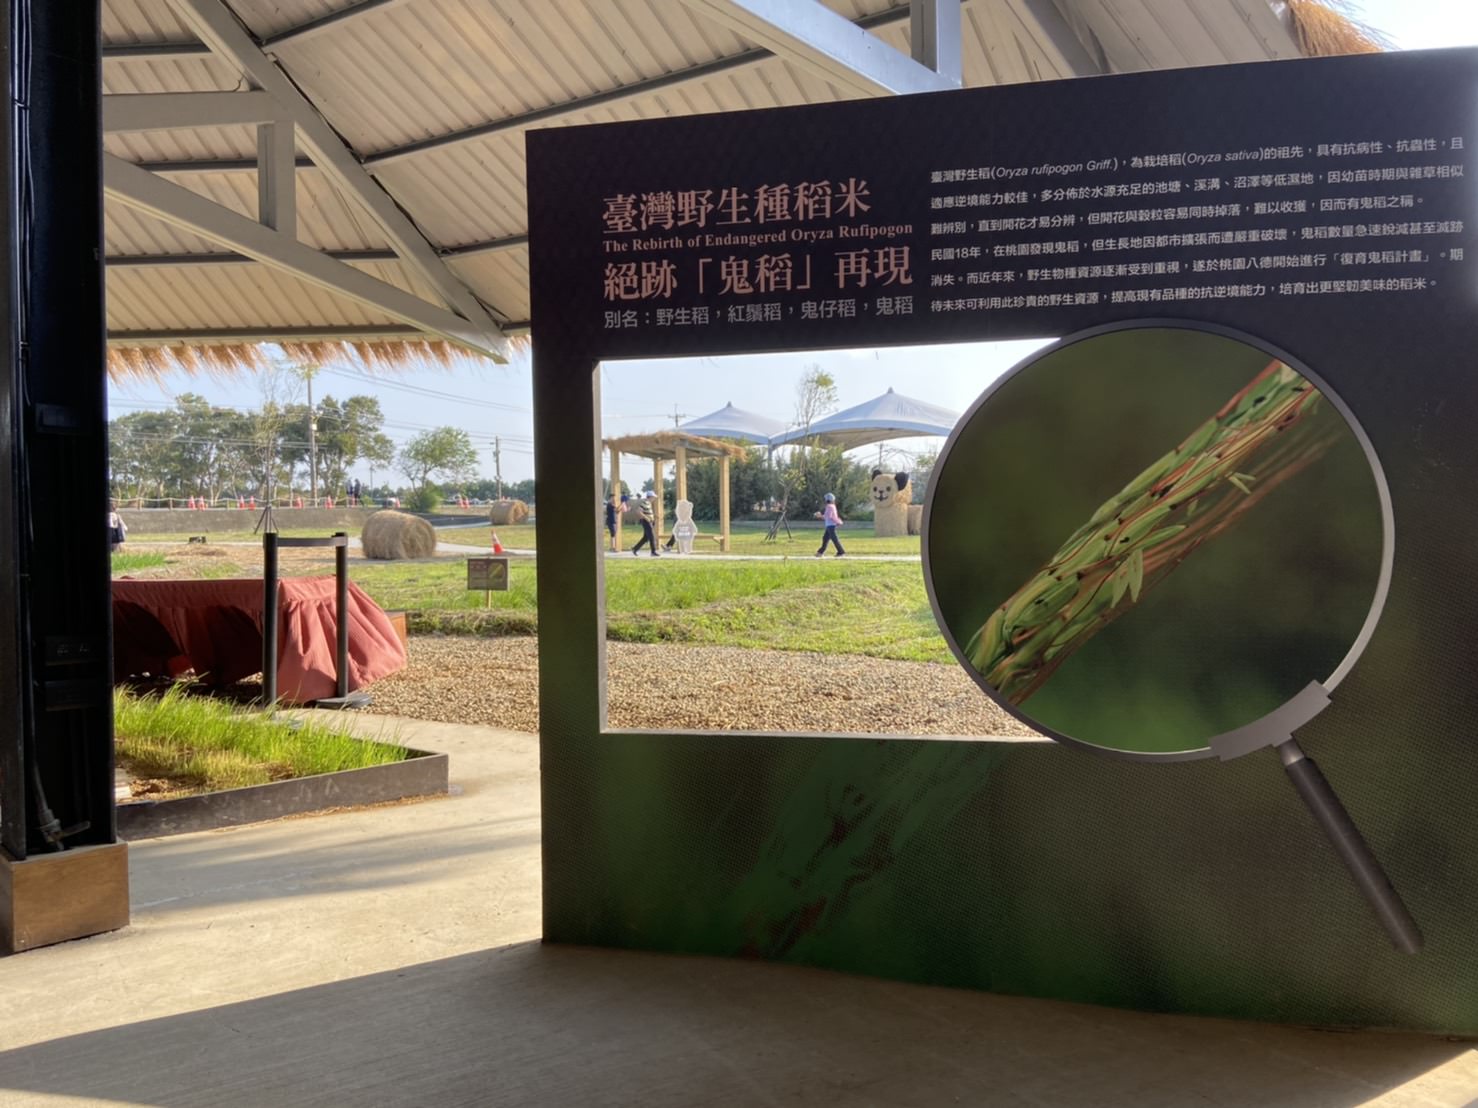 2019 桃園農業博覽會 米の集會所 無人機飛行、製米達人體驗